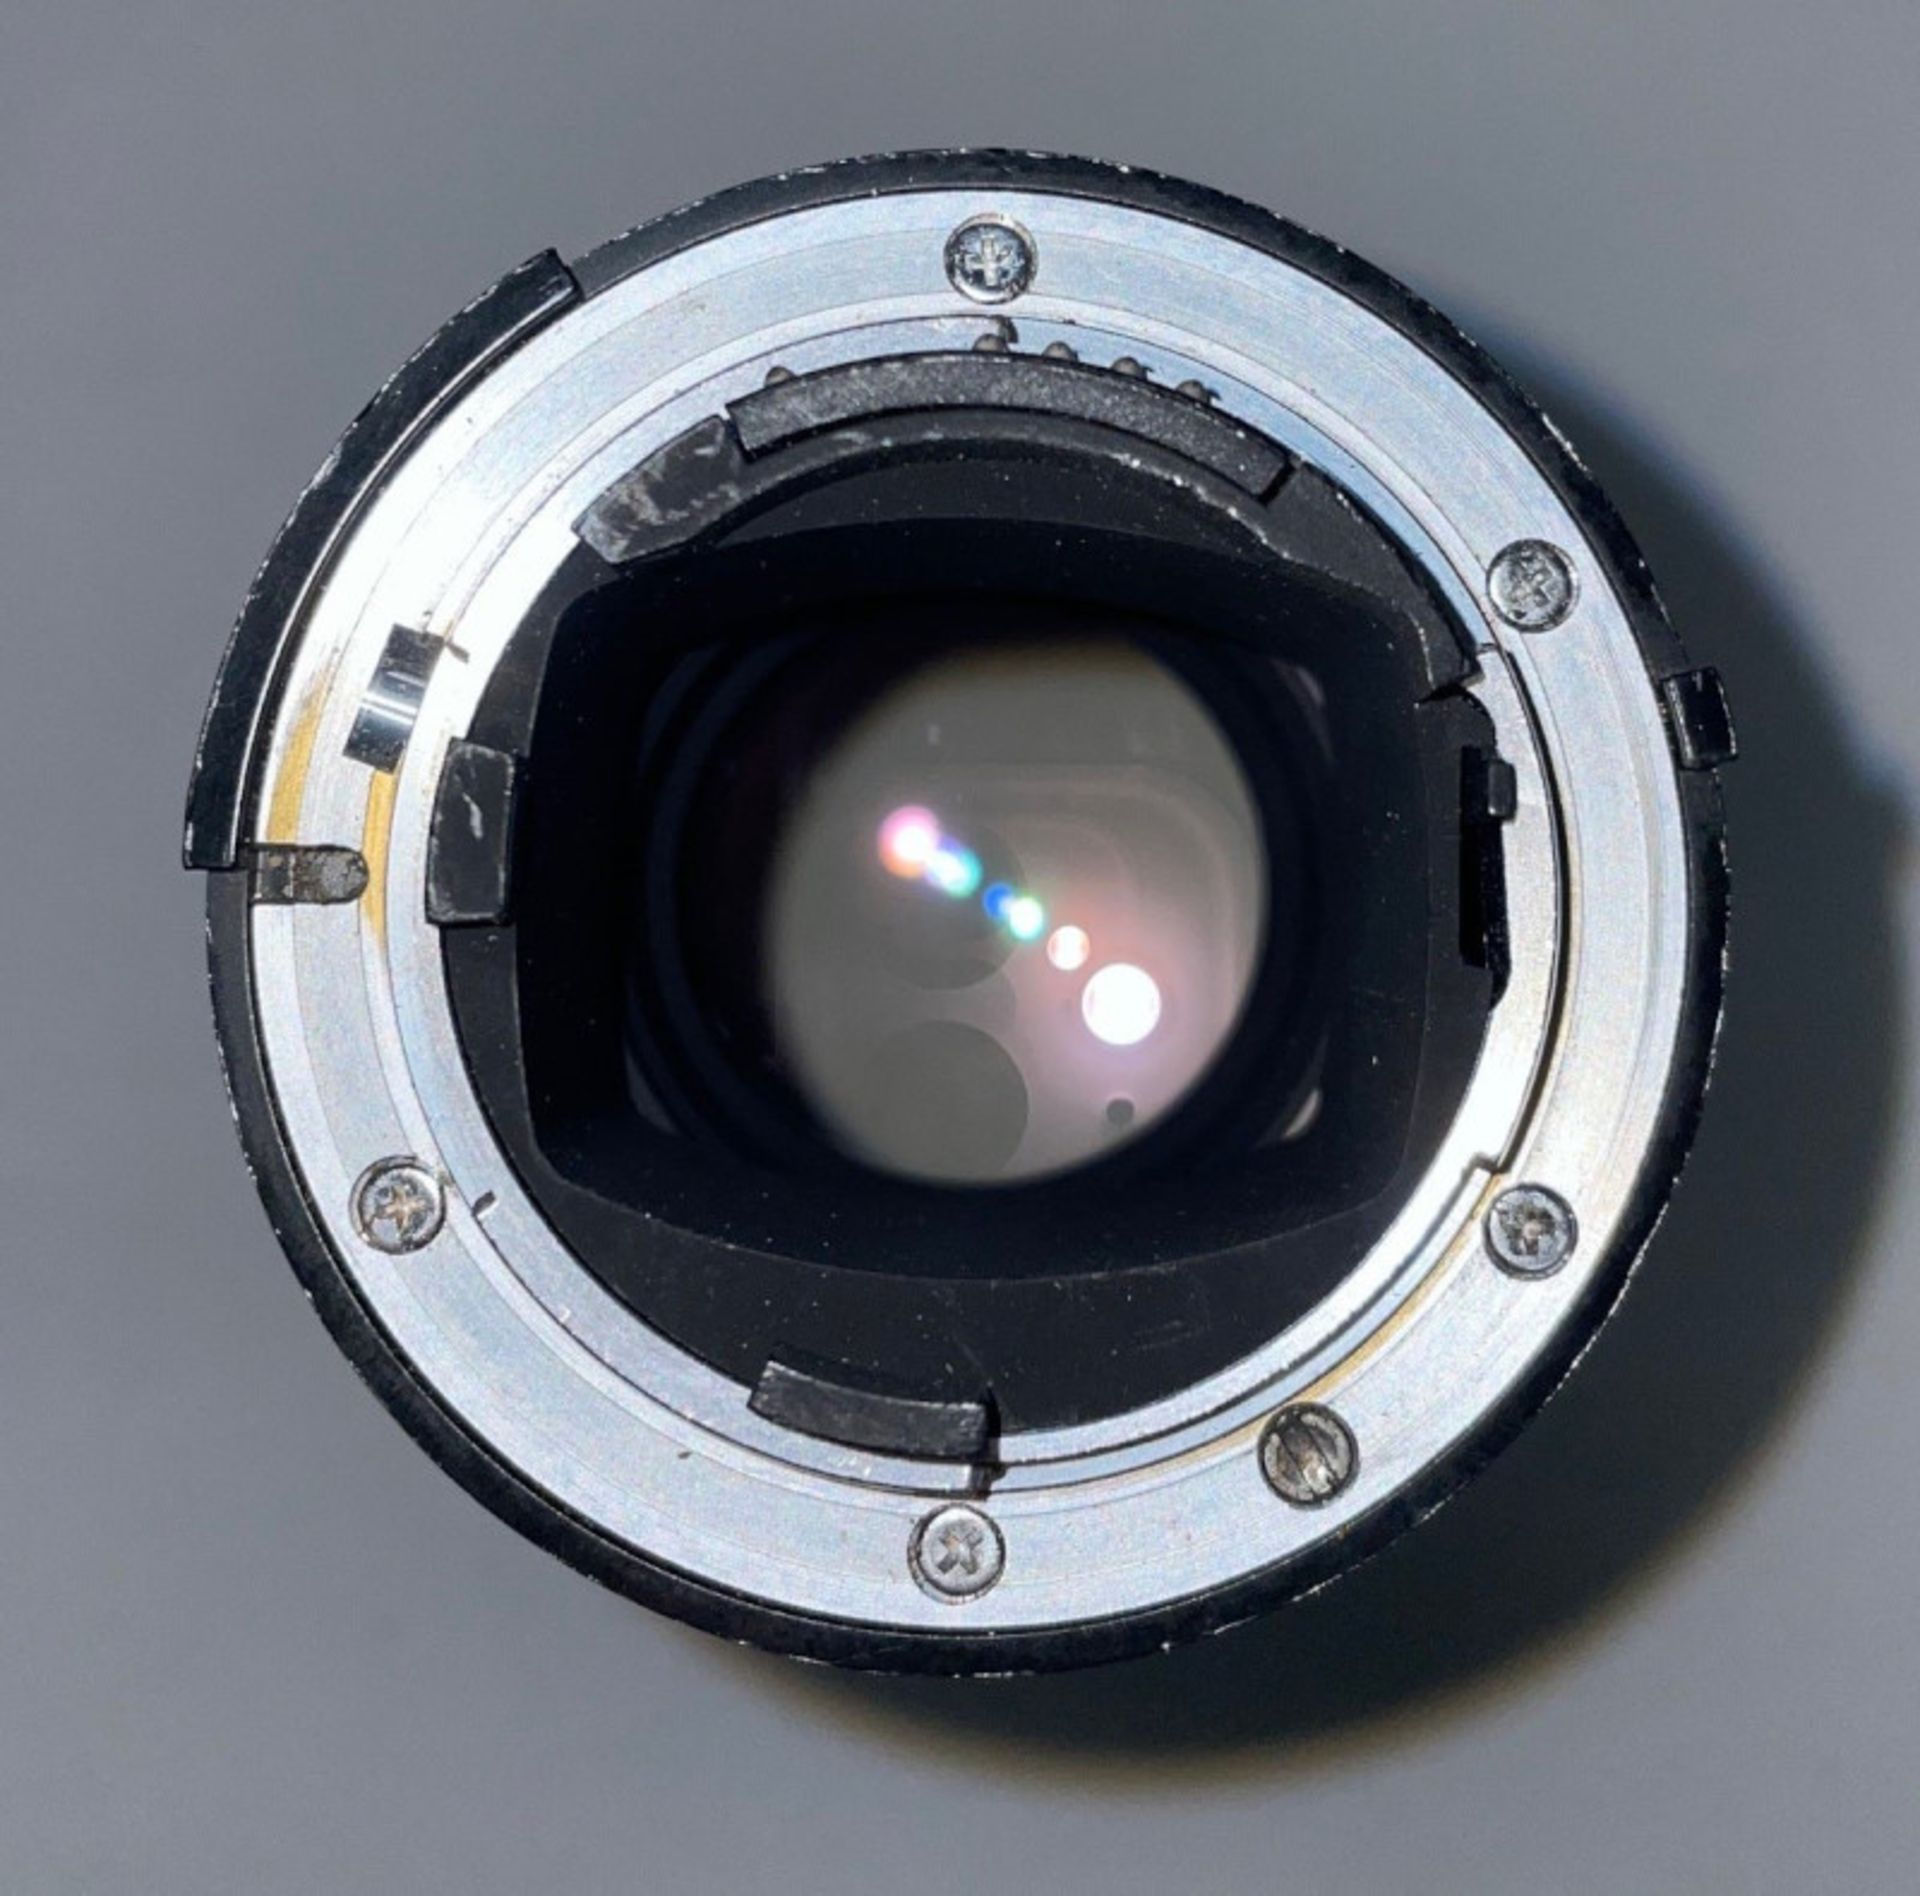 Nikon ED AF Nikkor 180mm - 1:2.8 Lens - Serial No. 272140 with HOYA 72mm UV(O) Filter in Nikon case - Image 6 of 7